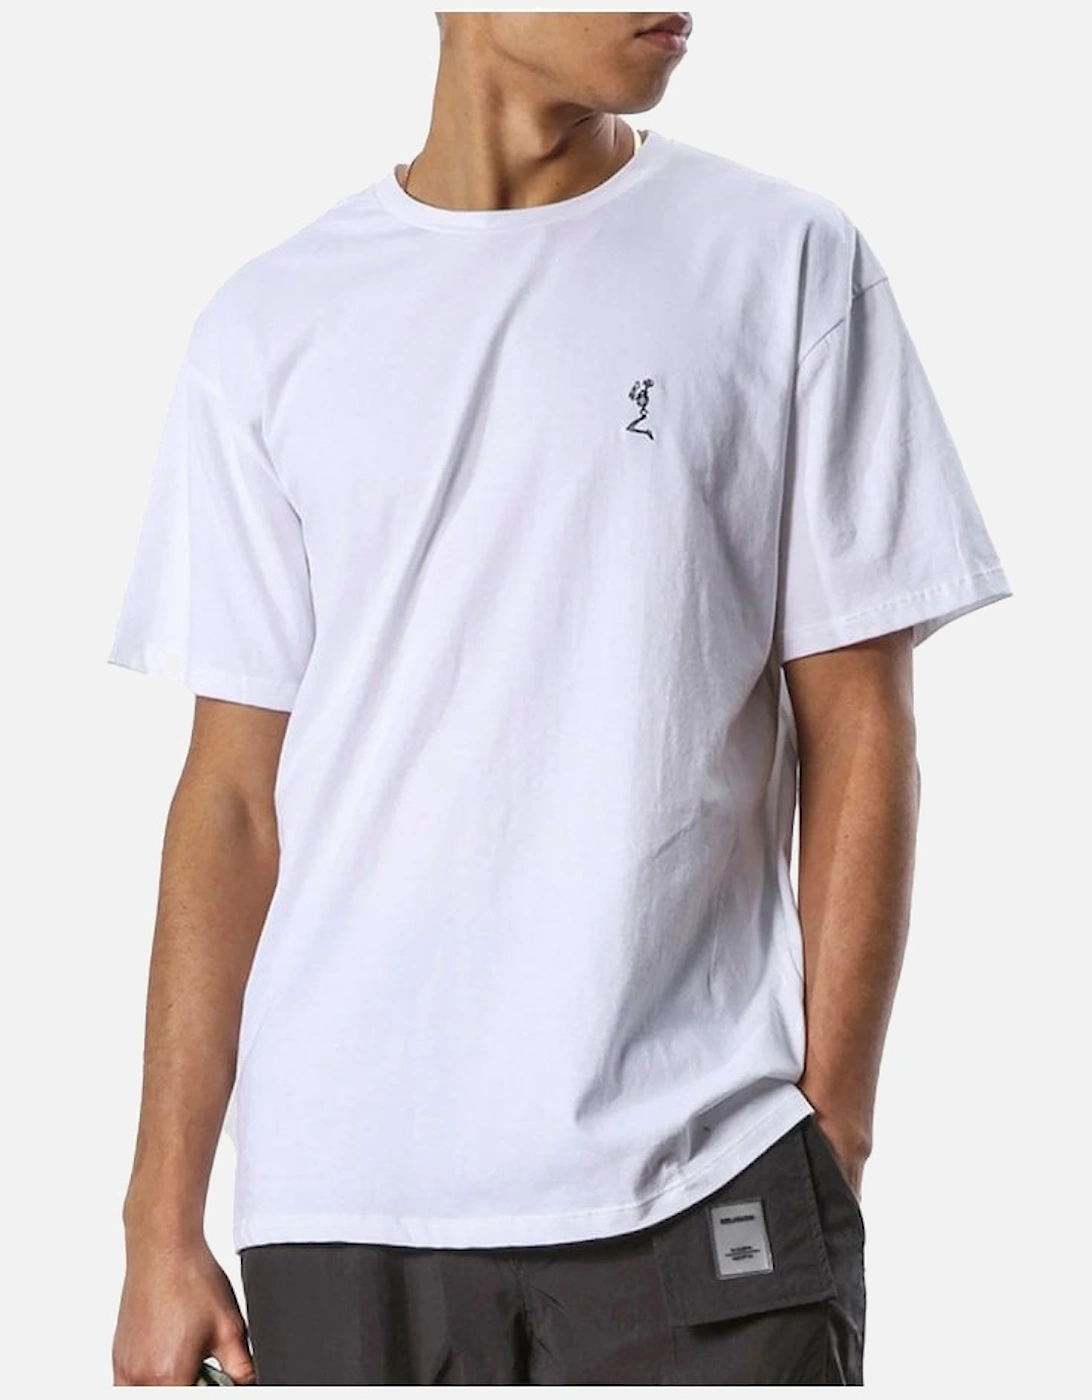 Stencil T Shirt White